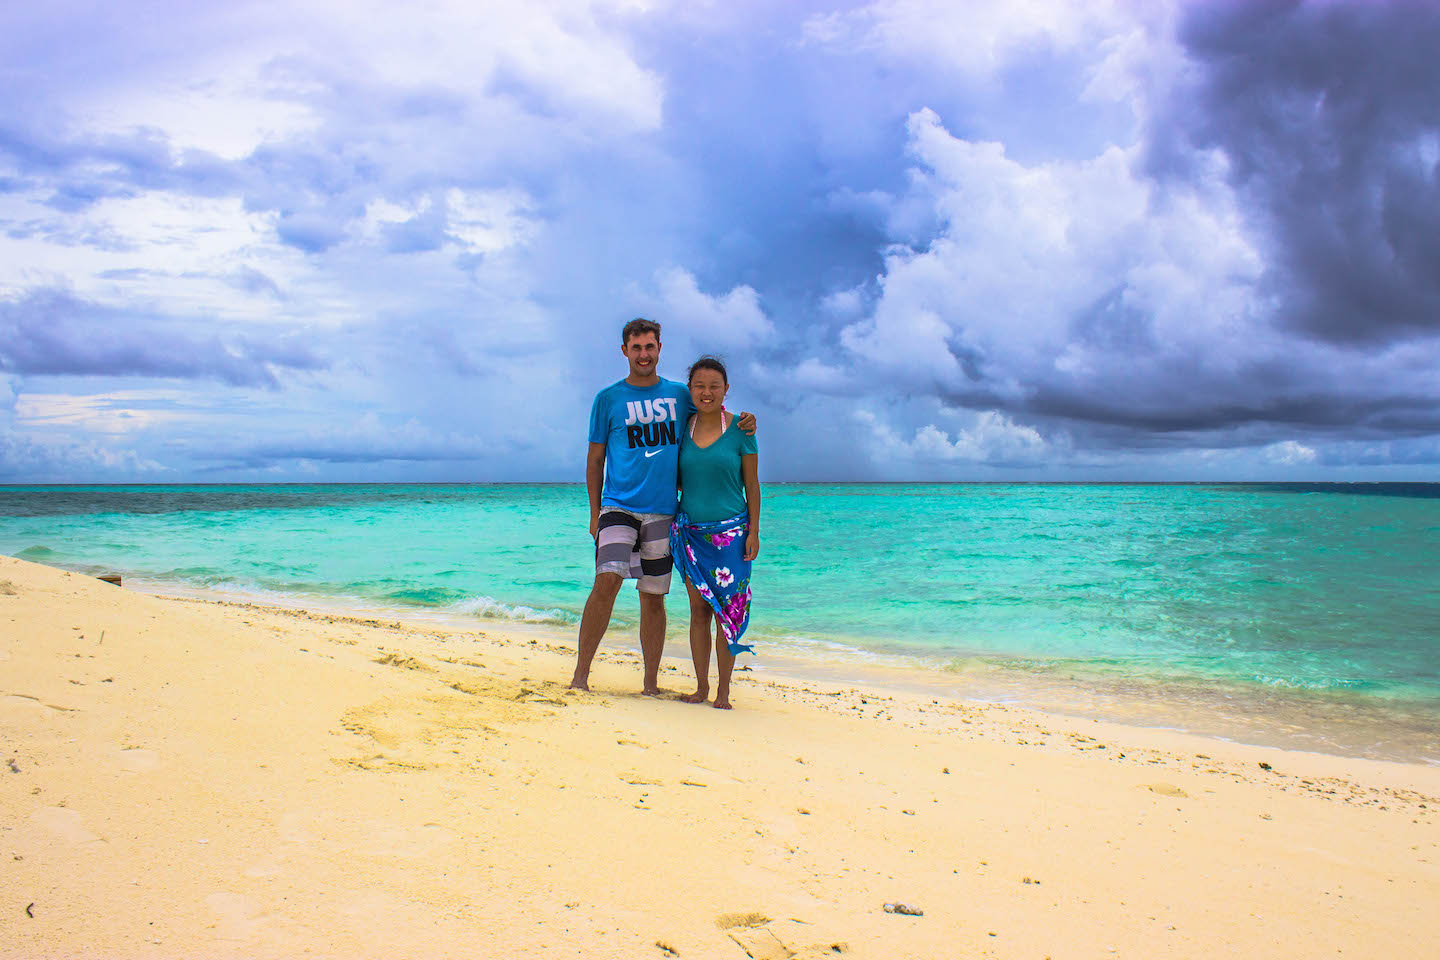 Julie and Carlos enjoying the sandbank, South Male Atoll, Maldives